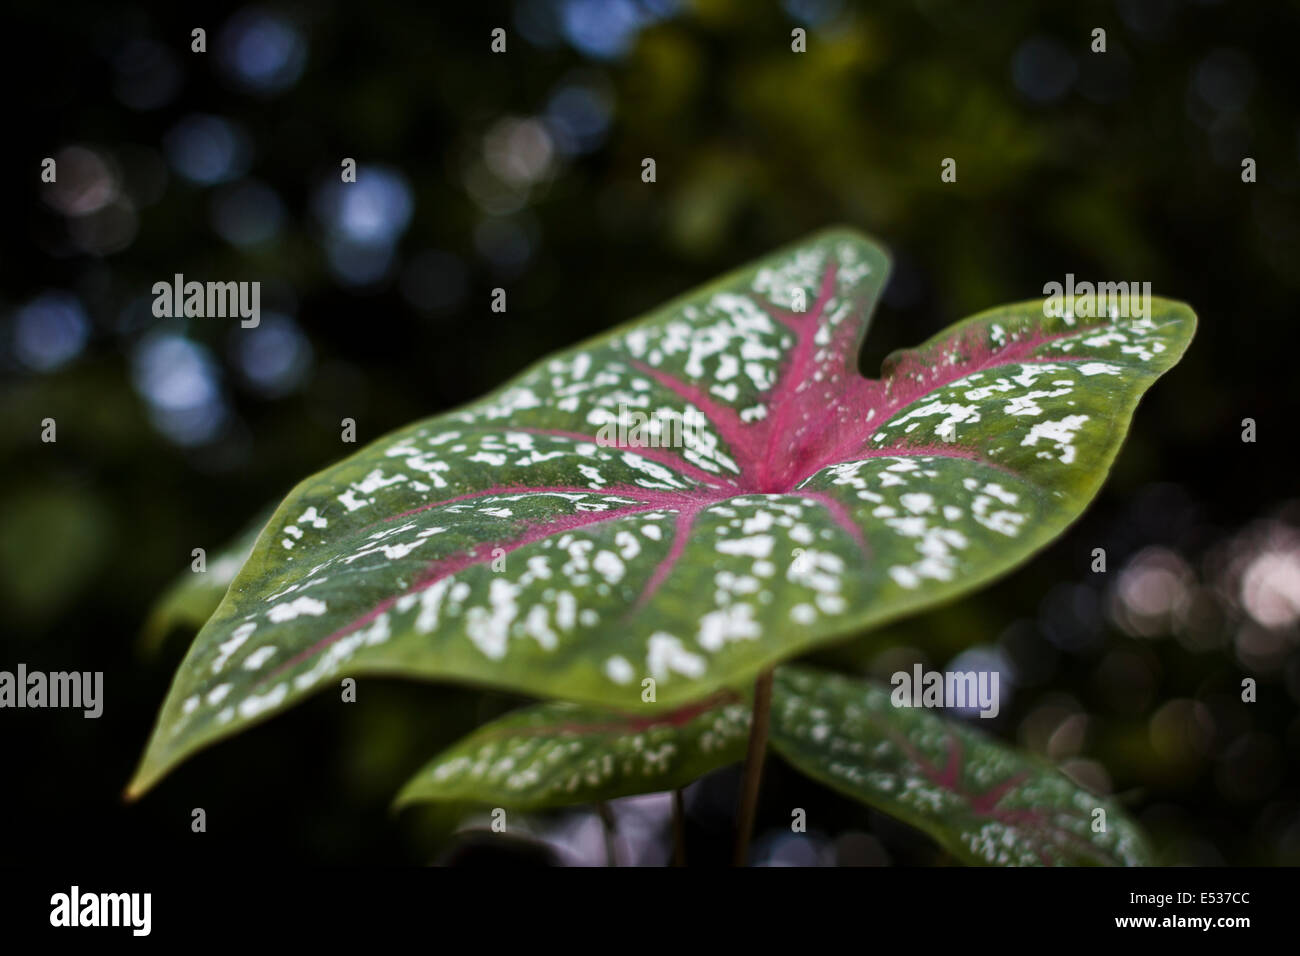 Caladium hortulanum leaf Stock Photo